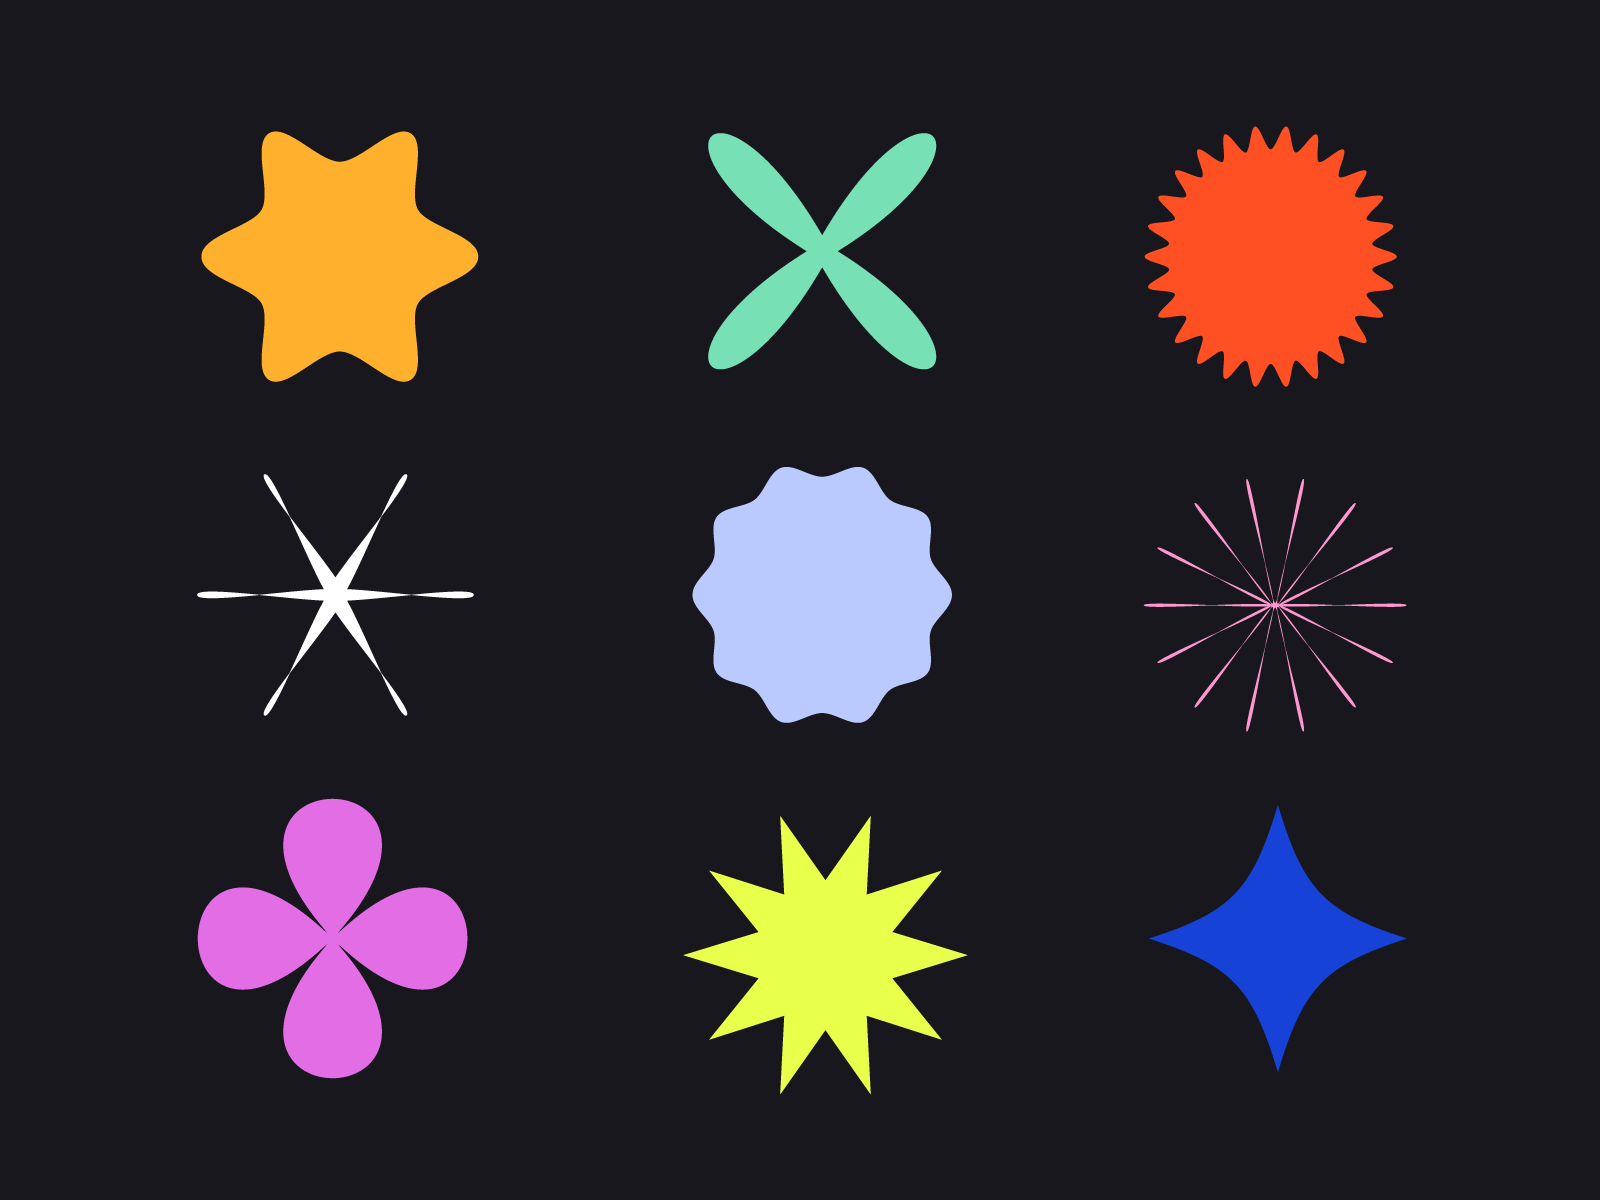 shapes illustrator download